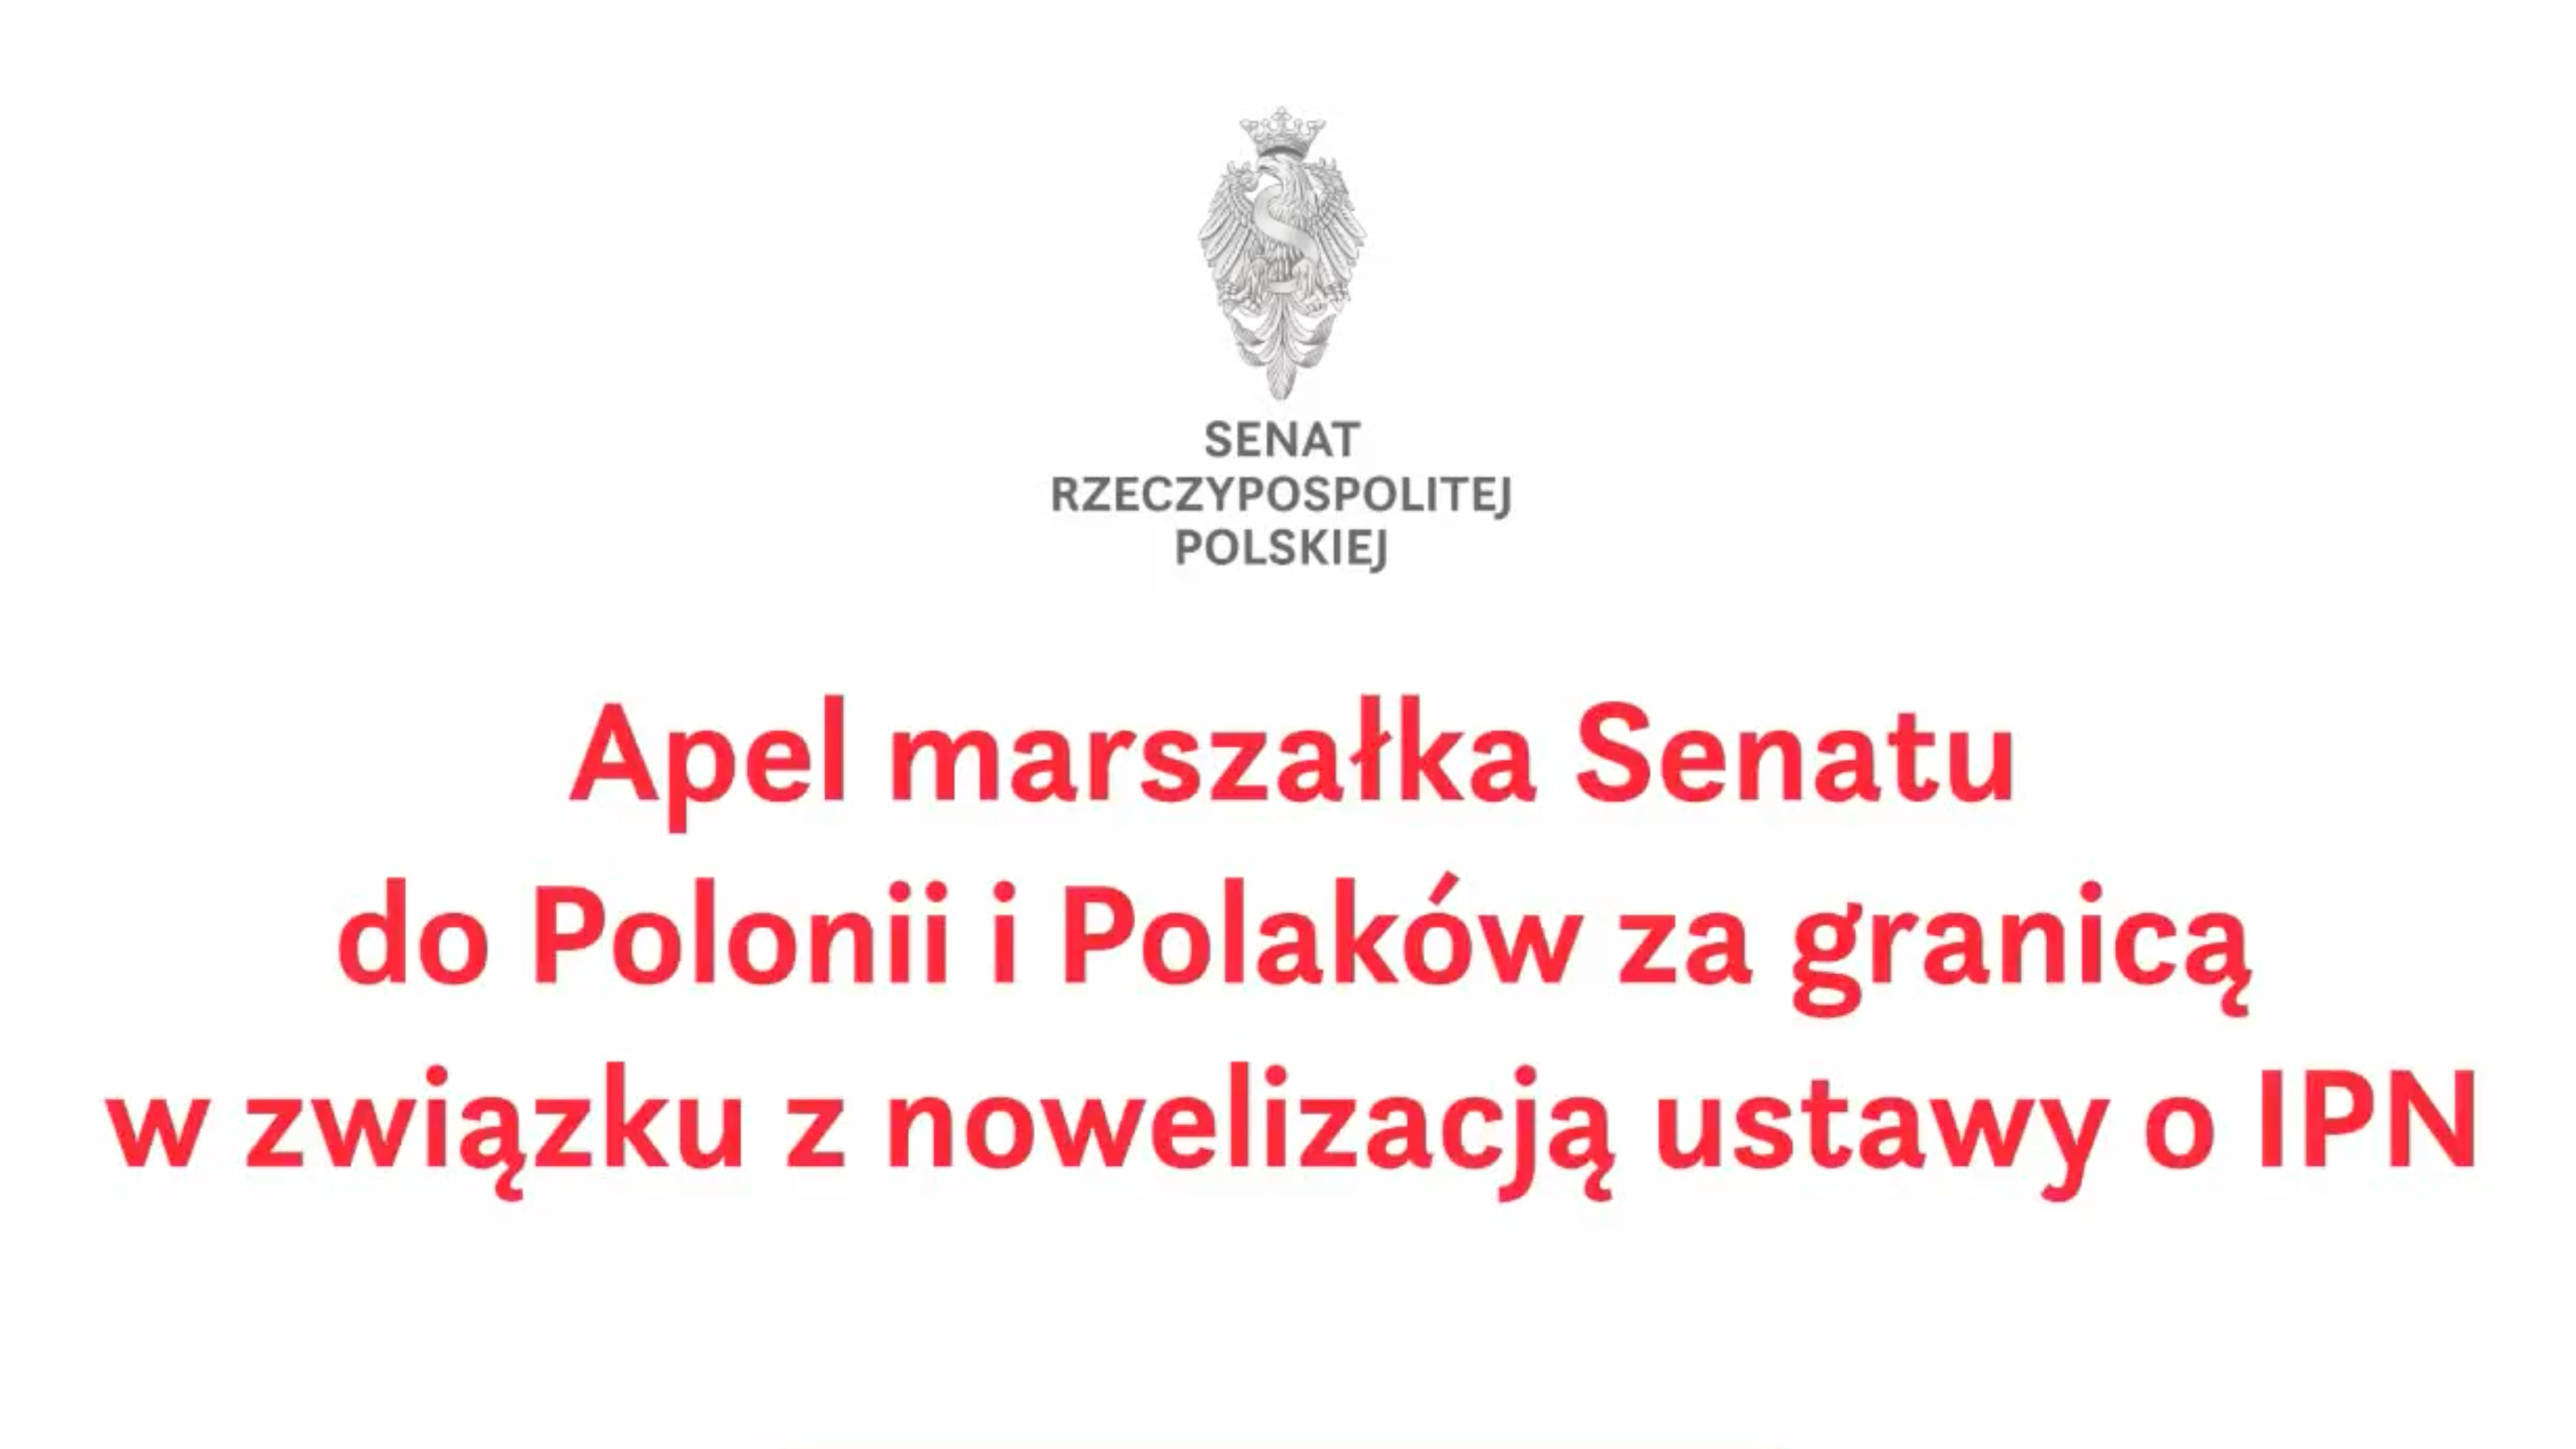 Apel marszałka Senatu do Polonii i Polaków za granicą